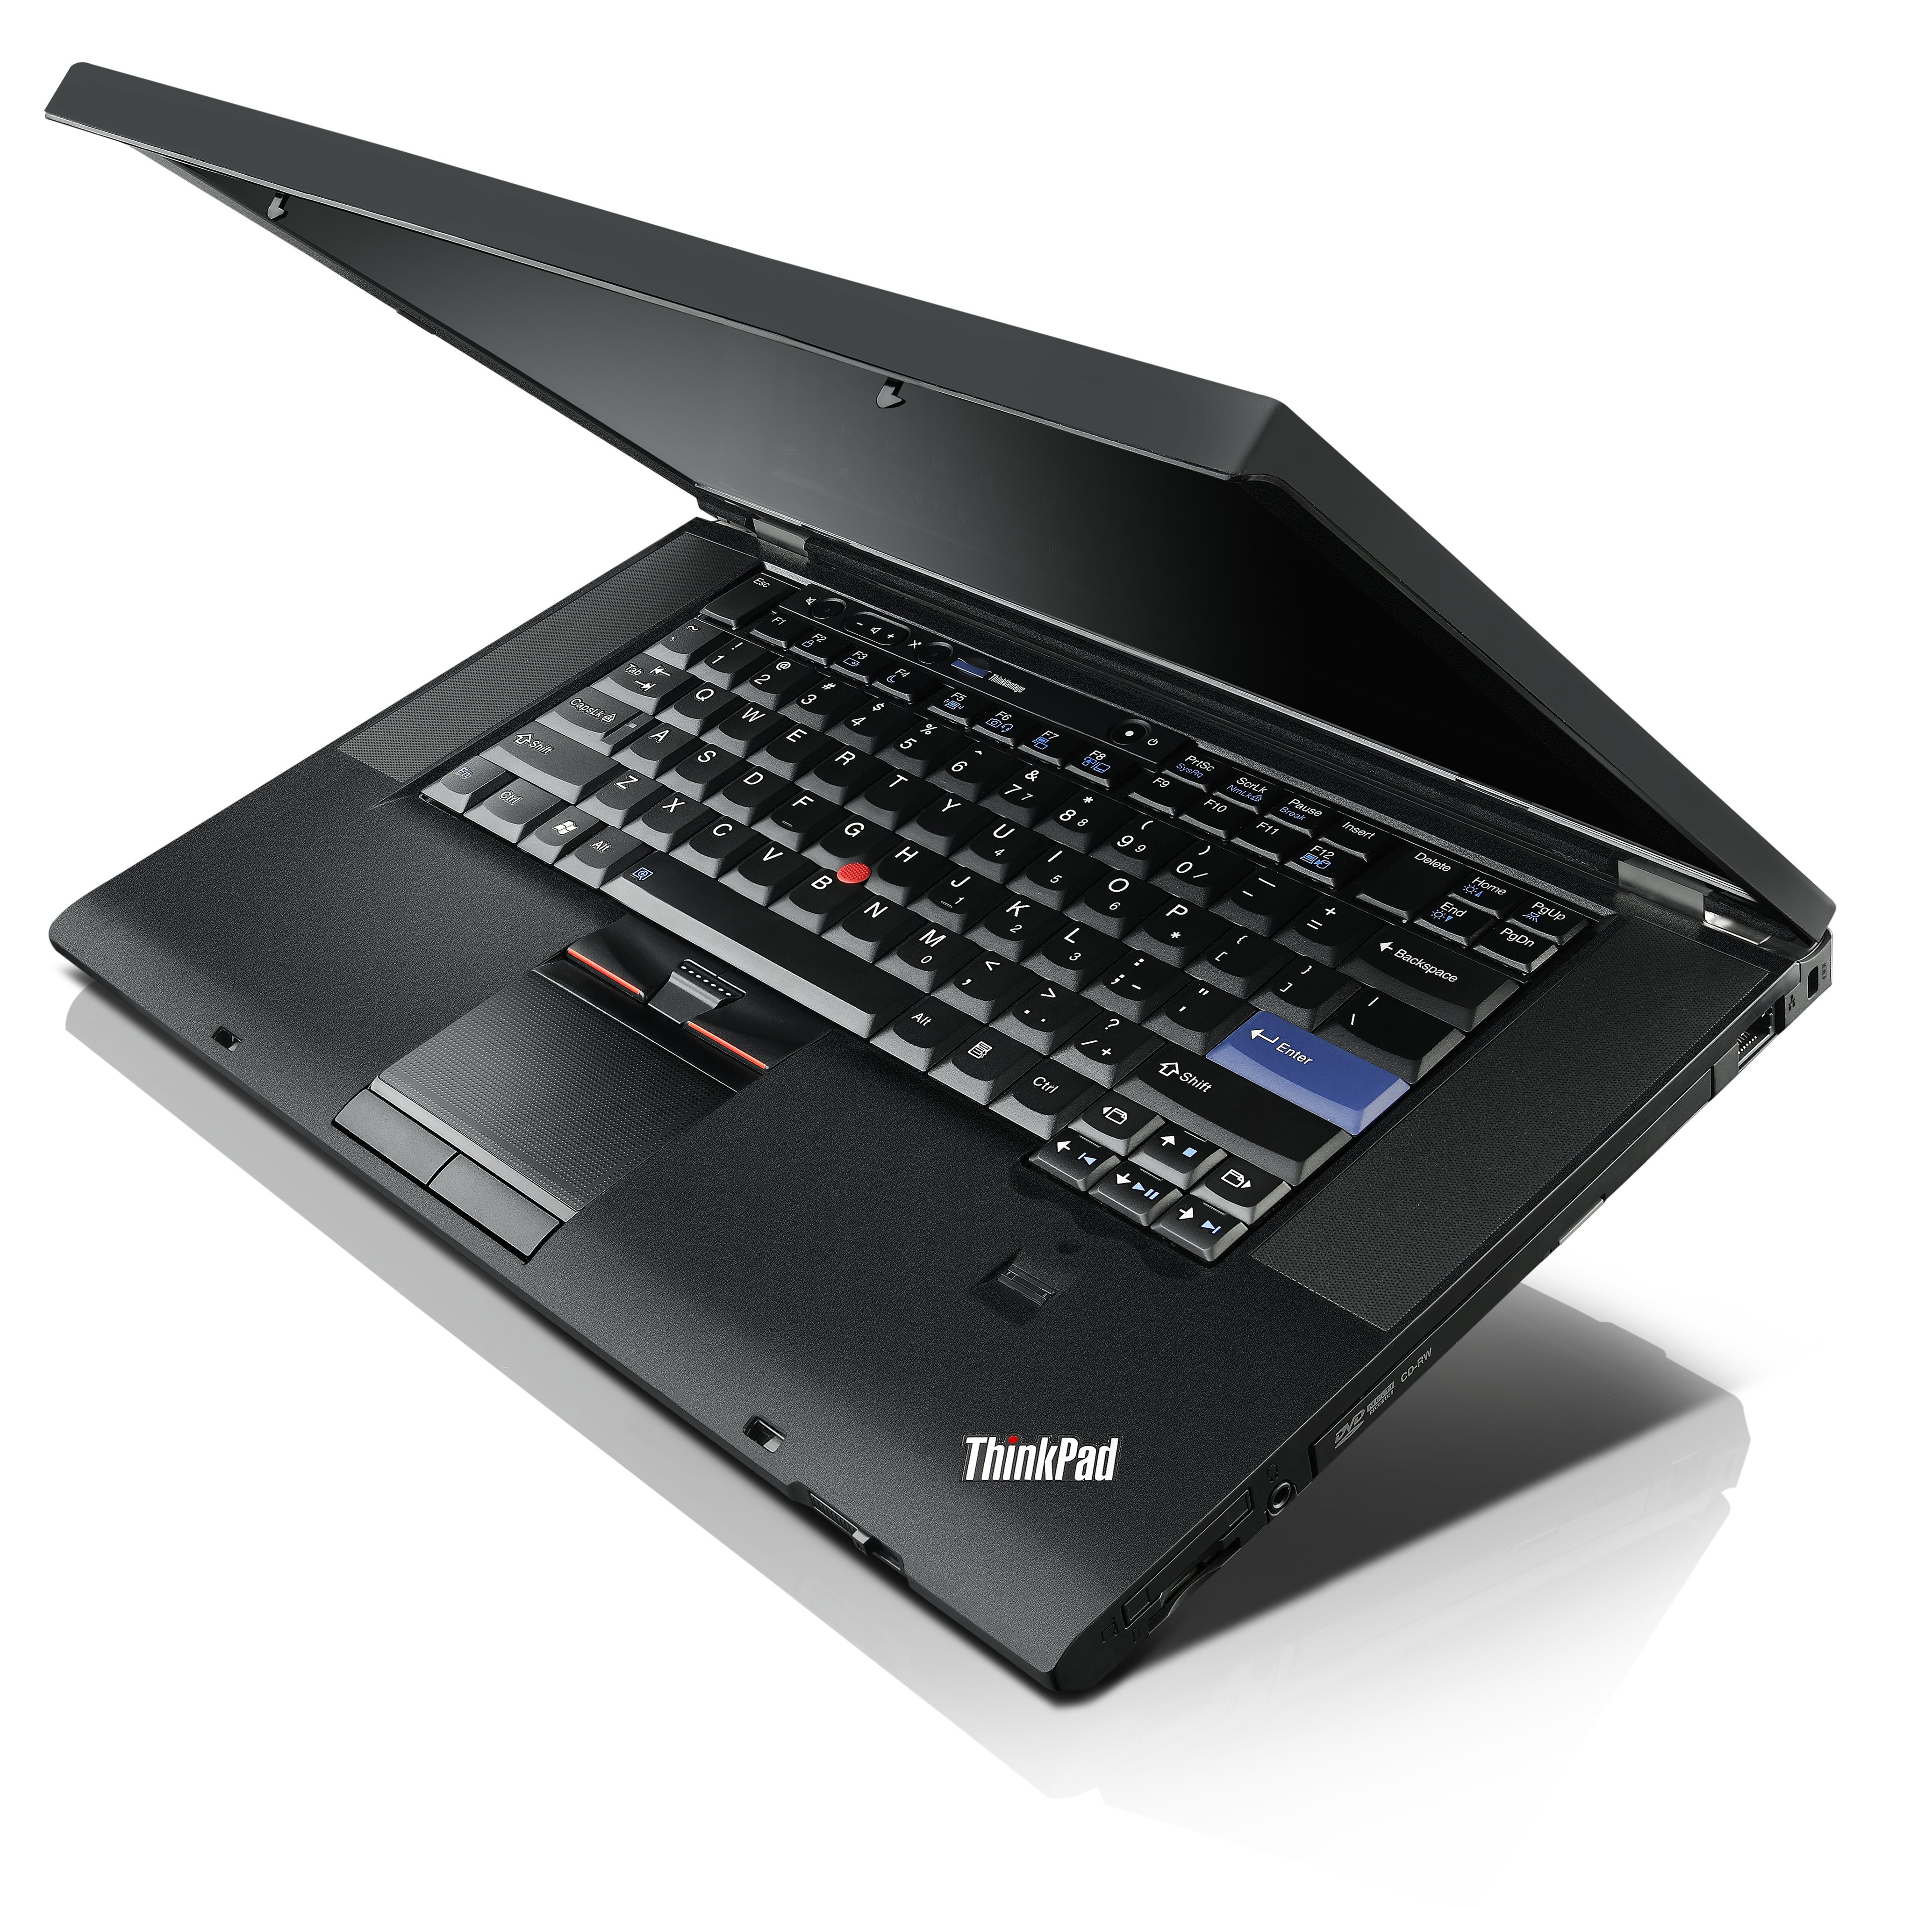 Lenovo ThinkPad T520 Specs